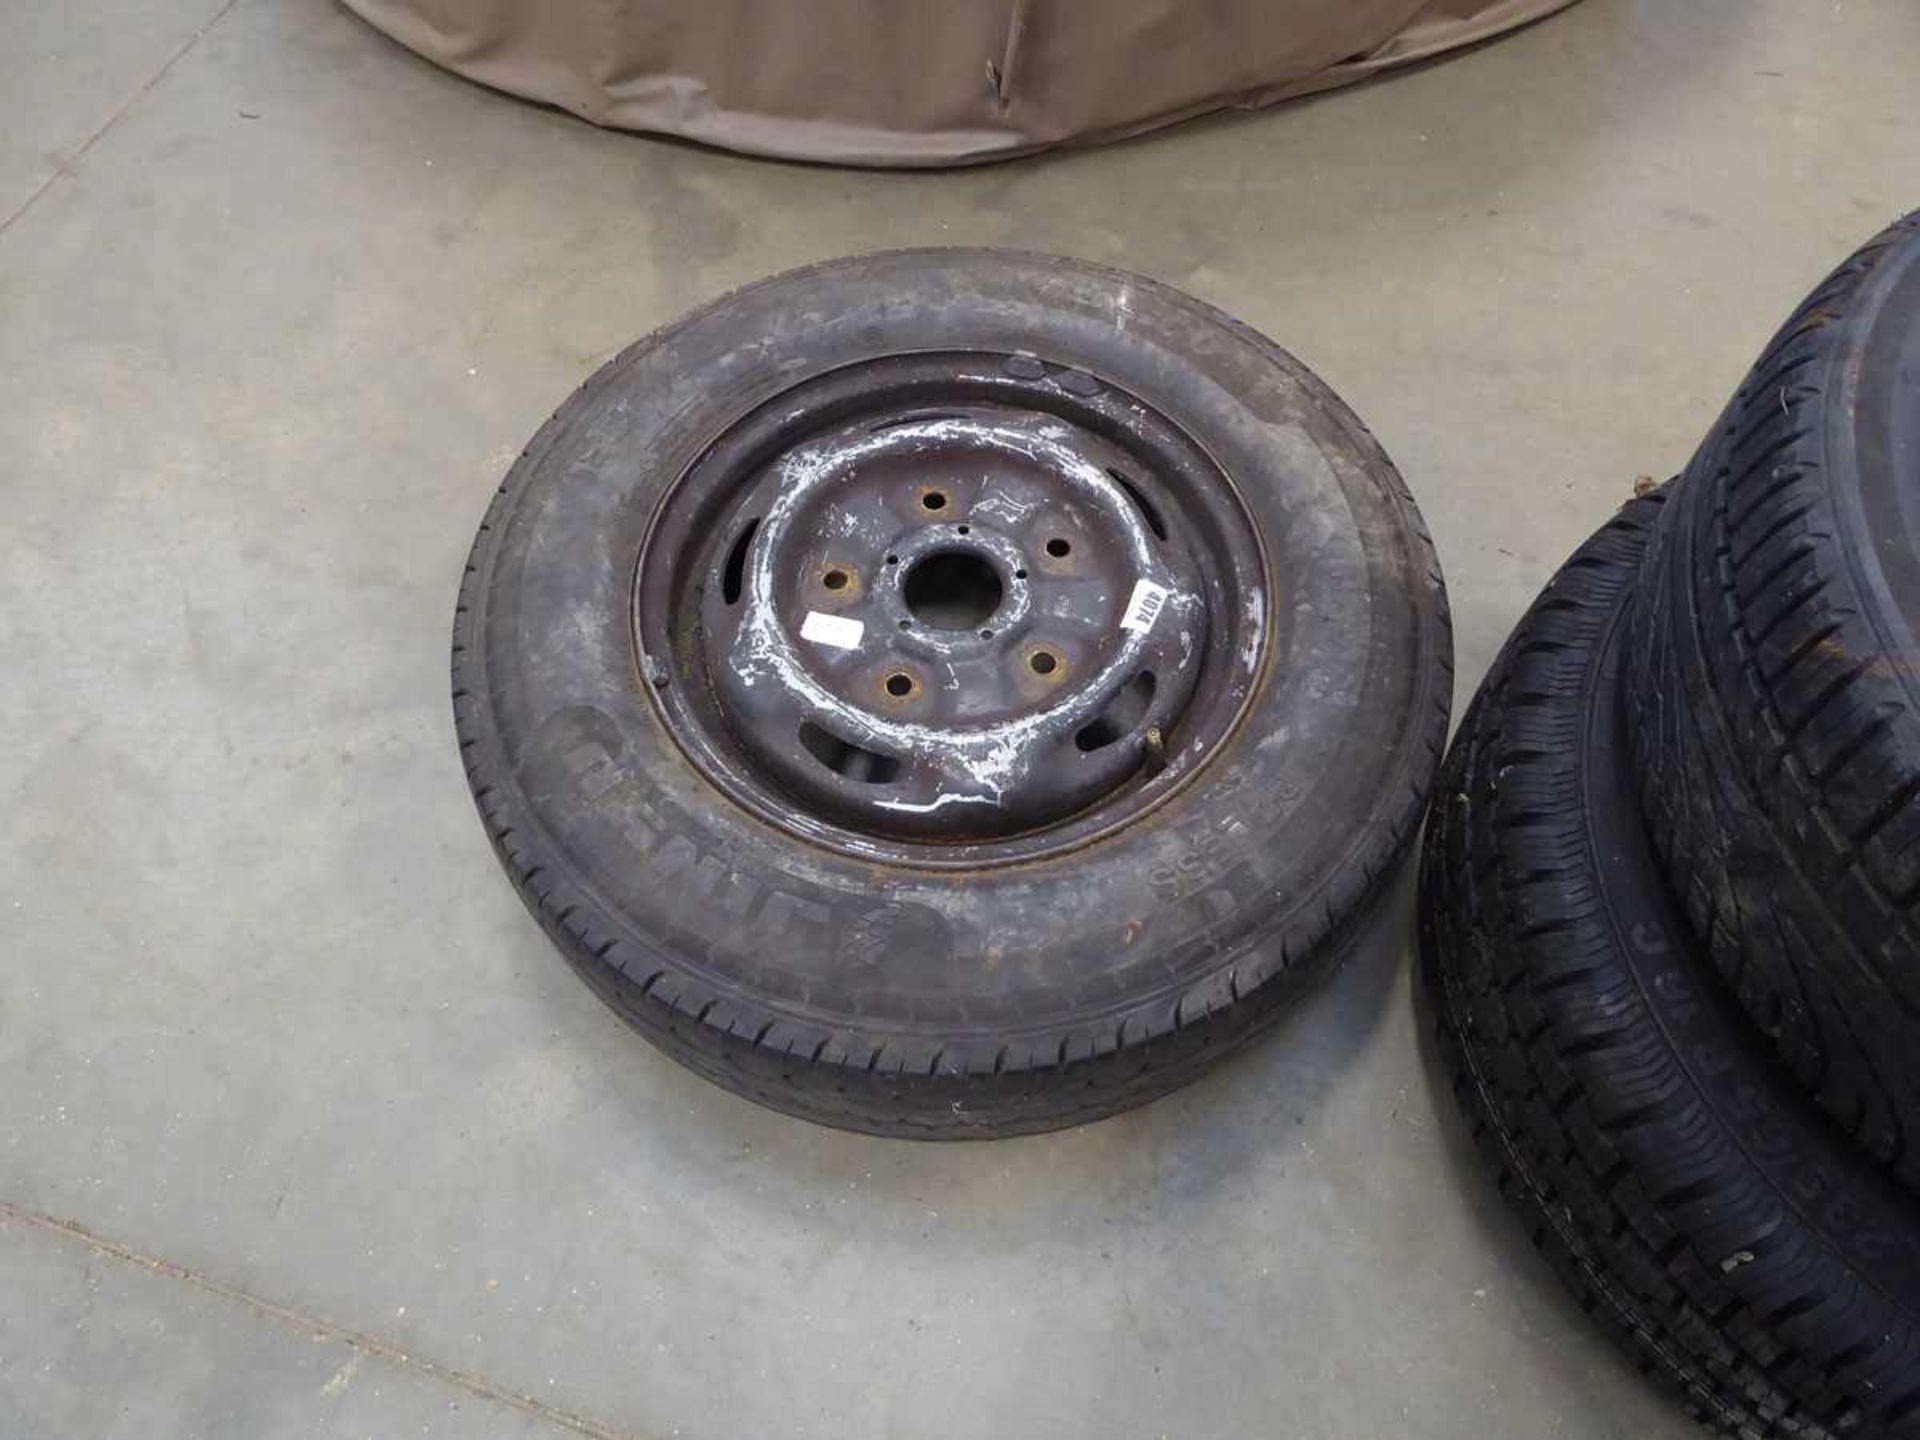 Single steel ring tyre, steering wheel and tyre